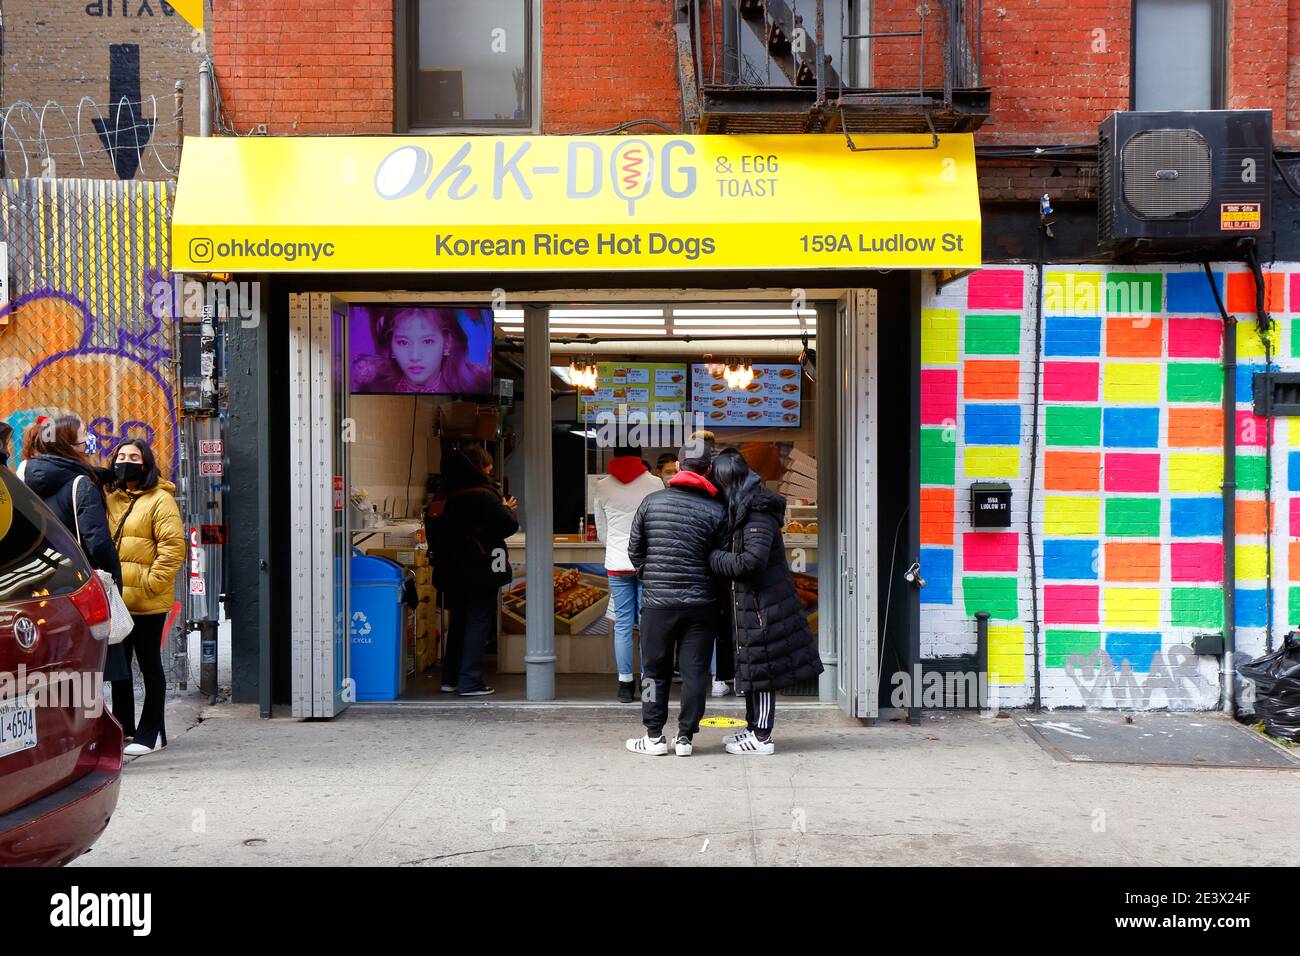 Oh K-Dog, 159 Ludlow St, Nueva York, NY. Escaparate exterior de un perro caliente de arroz coreano y tienda de tostadas de huevo en el barrio del Lower East Side de Manhattan. Foto de stock